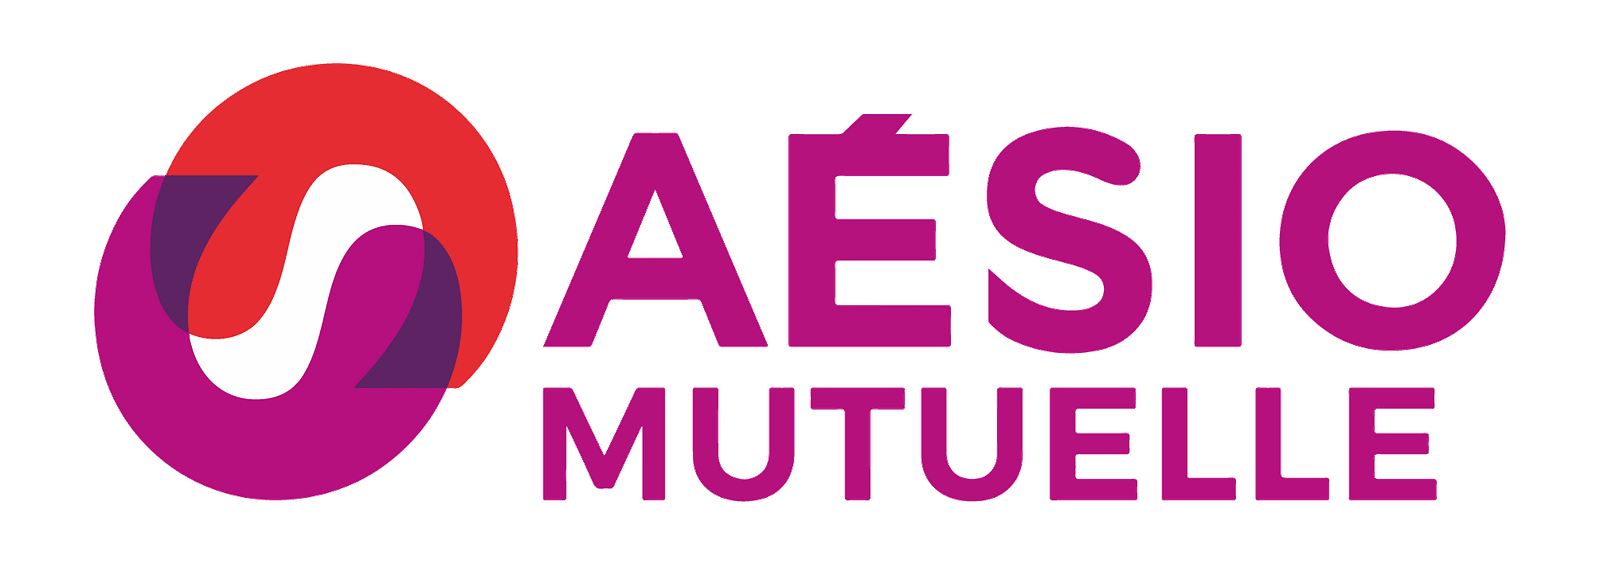 Logo_AESIO_MUTUELLE